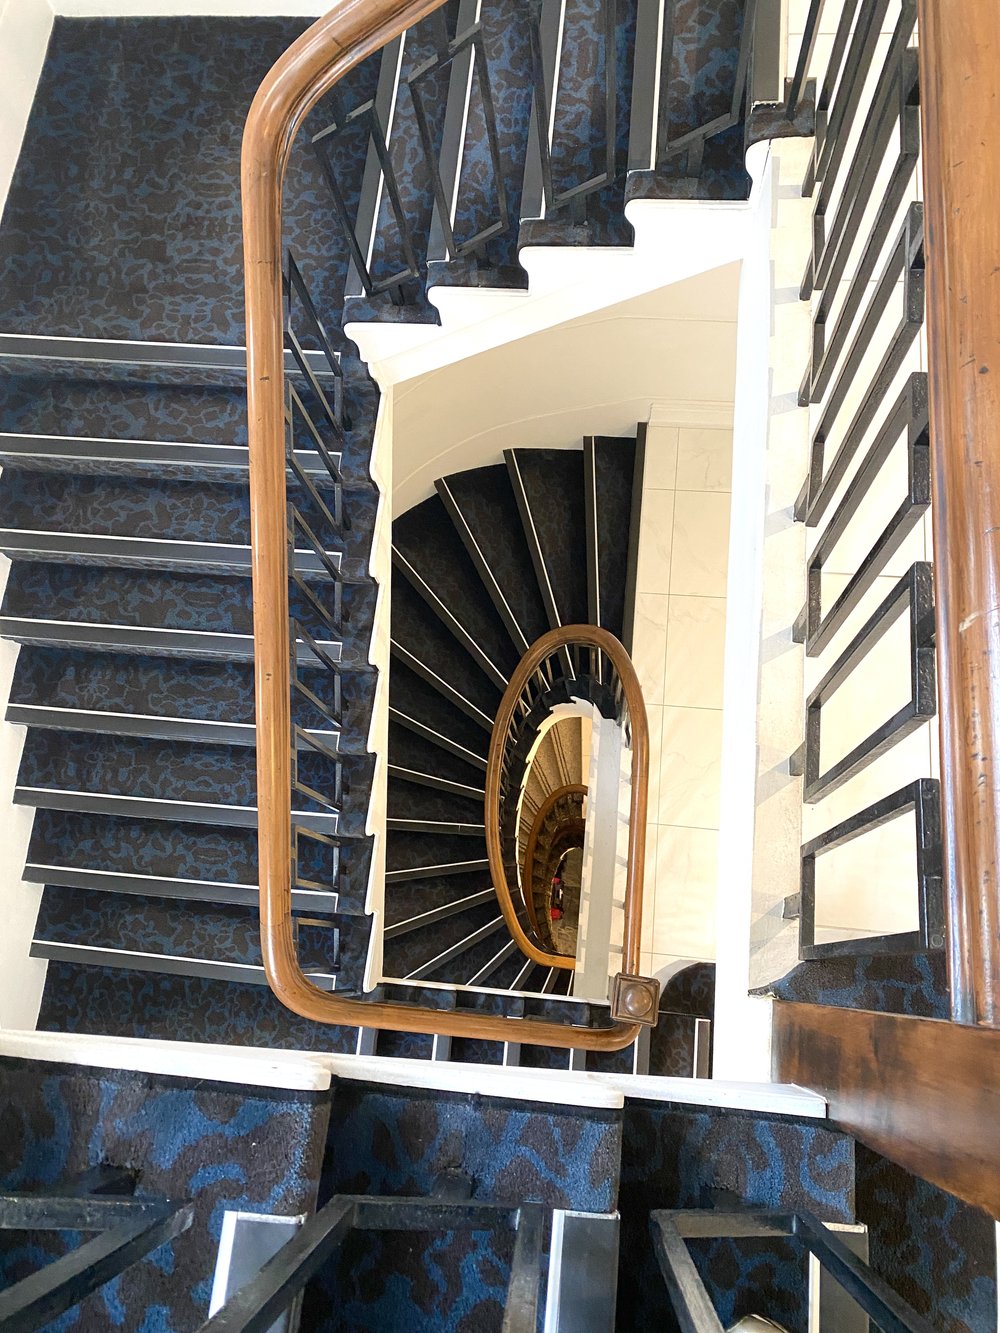 Fable Art Deco Stairway looking down.jpg